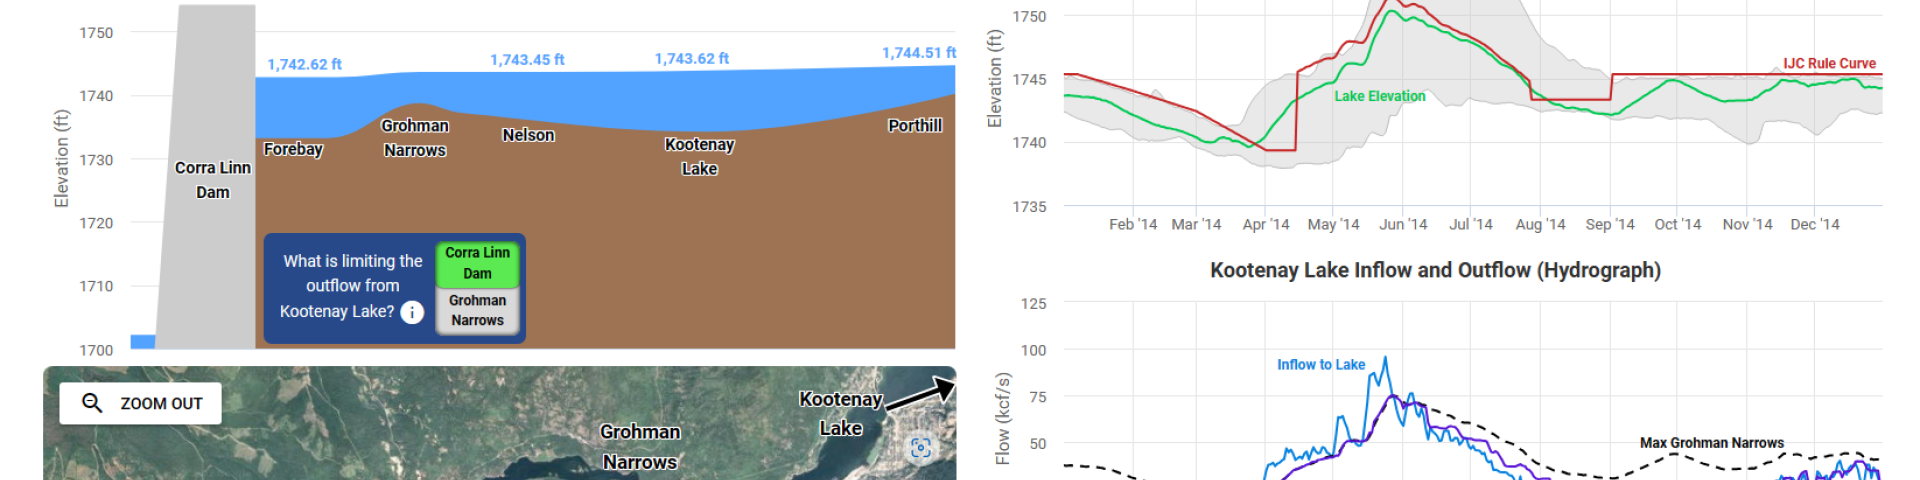 screenshot kootenay lake visualization tool water levels